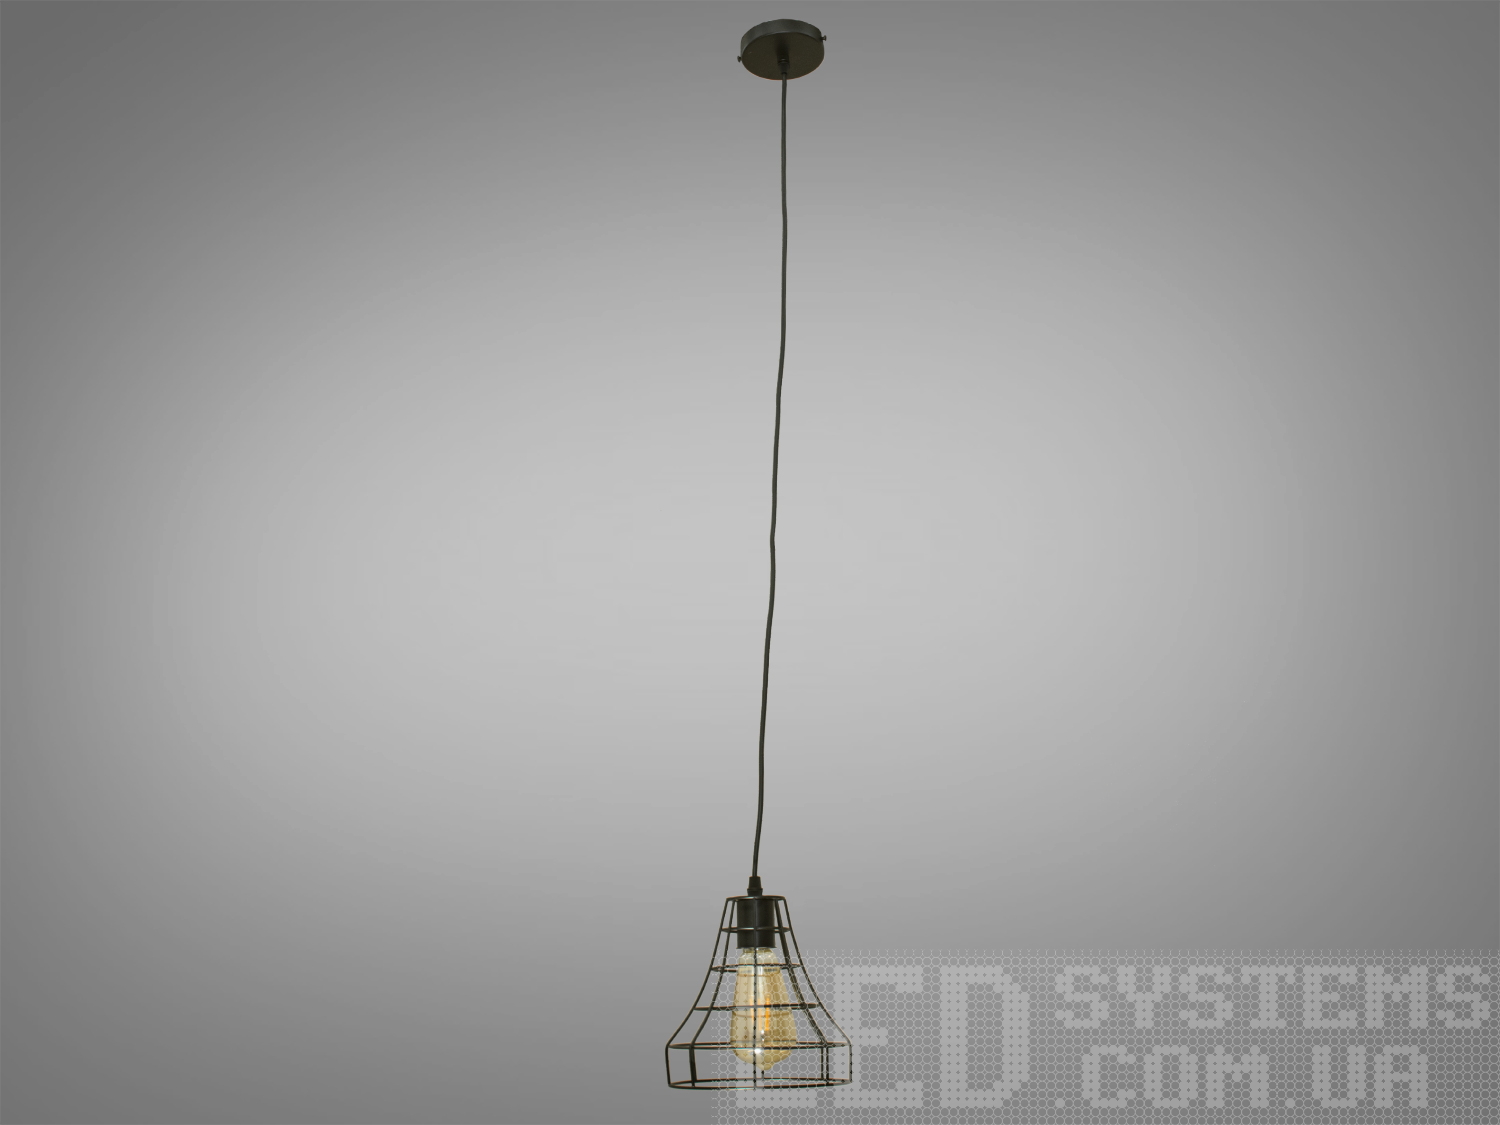 Світильник-підвіс в стилі Loft, привносить в простір поєднання промислового та сучасного дизайну. Її унікальність виражена в металевому плафоні, виготовленому зі сплетеного дроту, і теплому світлі лампочки Edison.
 Основні Характеристики:
Металевий Плафон із Плетеного Дроту:
Металевий плафон виглядає, ніби він вручну плетений з дроту, створюючи цікавий інтер'єрний акцент та віддзеркалюючи простоту лофт-стилю.
Лампочка Edison:
В центрі плафону розташована лампочка Edison, яка надає освітленню теплоту та неповторний вигляд, підкреслюючи індустріальний характер.
Простий і Ефективний Дизайн:
Люстра має простий, але ефективний дизайн, який дозволяє впроваджувати її в різні стилі інтер'єру.
Металевий Відтінок:
Металевий відтінок плафону може бути вибраний відповідно до загального кольорового рішення приміщення.
Сфера застосування:
Кухня чи Їдальня:
Ідеально підійде для настільного освітлення над кухонним столом чи барною стійкою, додаючи атмосферу теплоти та стилю.
Лофтові Простори:
Лофтові приміщення чи студії, де цінується сучасний індустріальний дизайн.
Кафе або Бари:
У комерційних приміщеннях, таких як кафе або бари, де стиль лофт завжди в тренді.
Творчі Робочі Простори:
В офісах чи творчих просторах (арт-простори, коворкінги, квеструми, фото-студії  та інш., де важливий естетичний дизайн і функціональність.
 Цей світильник в стилі Loft створює не лише практичне світло, але і виражає тепло та стиль, вносячи унікальний шарм в будь-яке приміщення.
 Лампочка в комплект не входить.